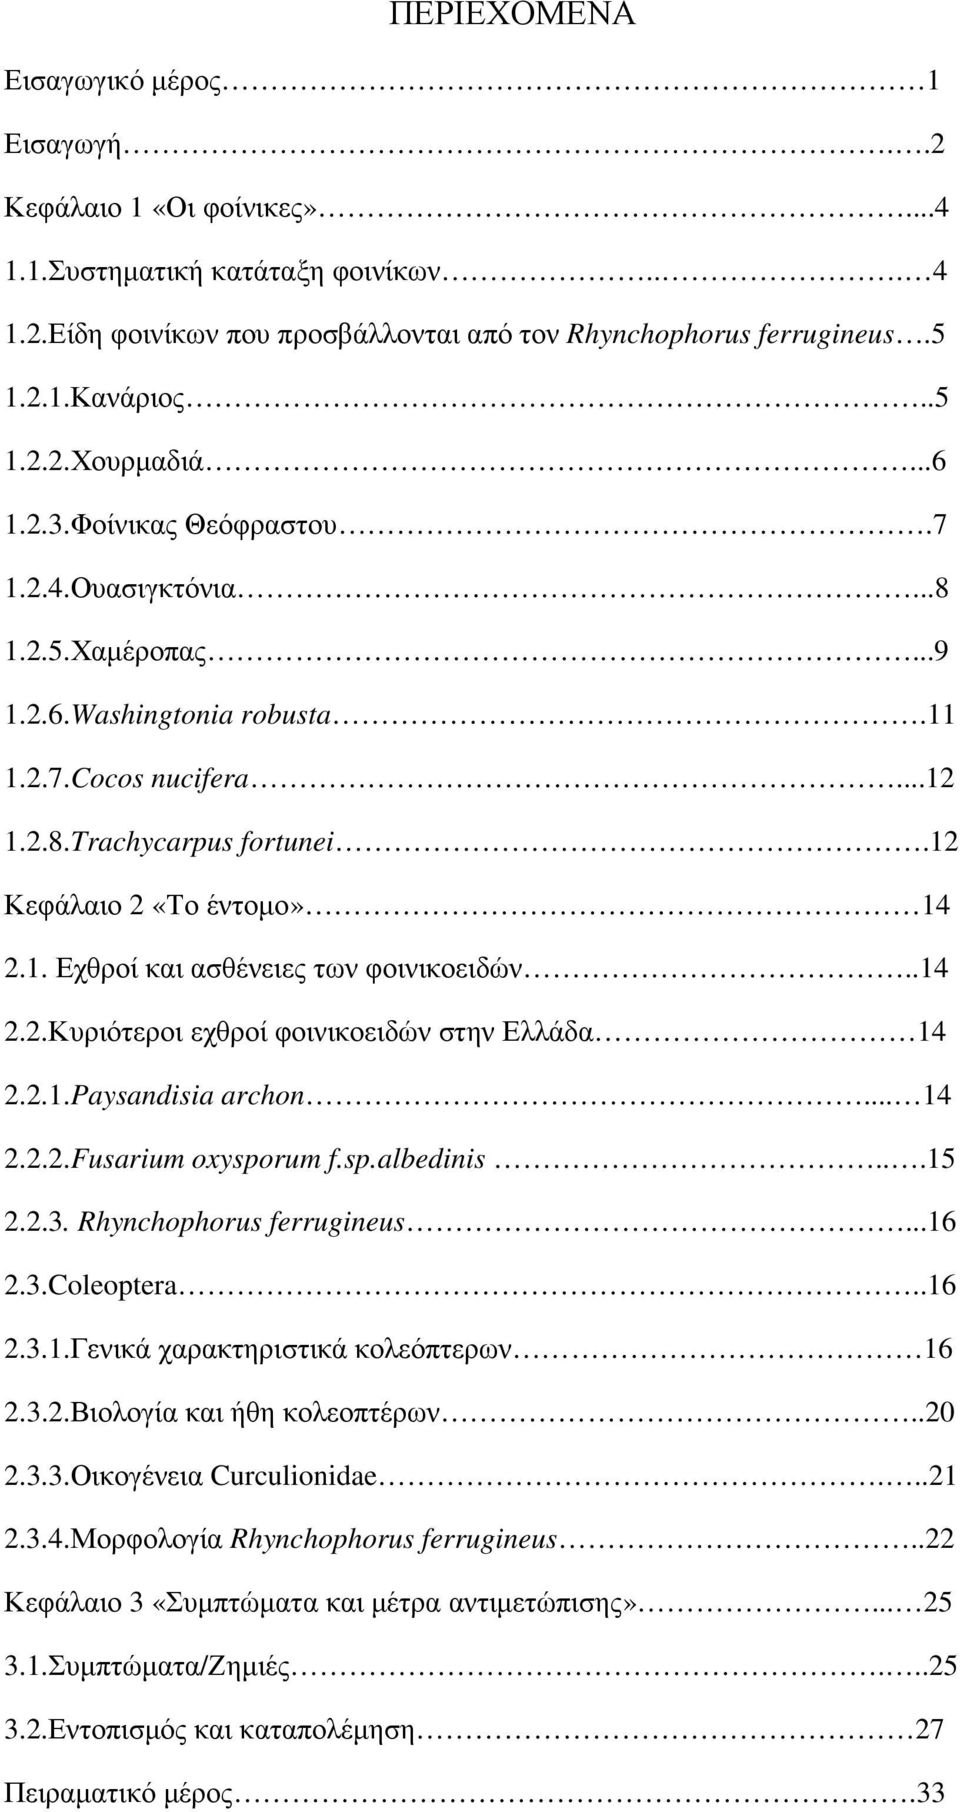 12 Κεφάλαιο 2 «Το έντοµο» 14 2.1. Εχθροί και ασθένειες των φοινικοειδών..14 2.2.Κυριότεροι εχθροί φοινικοειδών στην Ελλάδα 14 2.2.1.Paysandisia archon... 14 2.2.2.Fusarium oxysporum f.sp.albedinis.